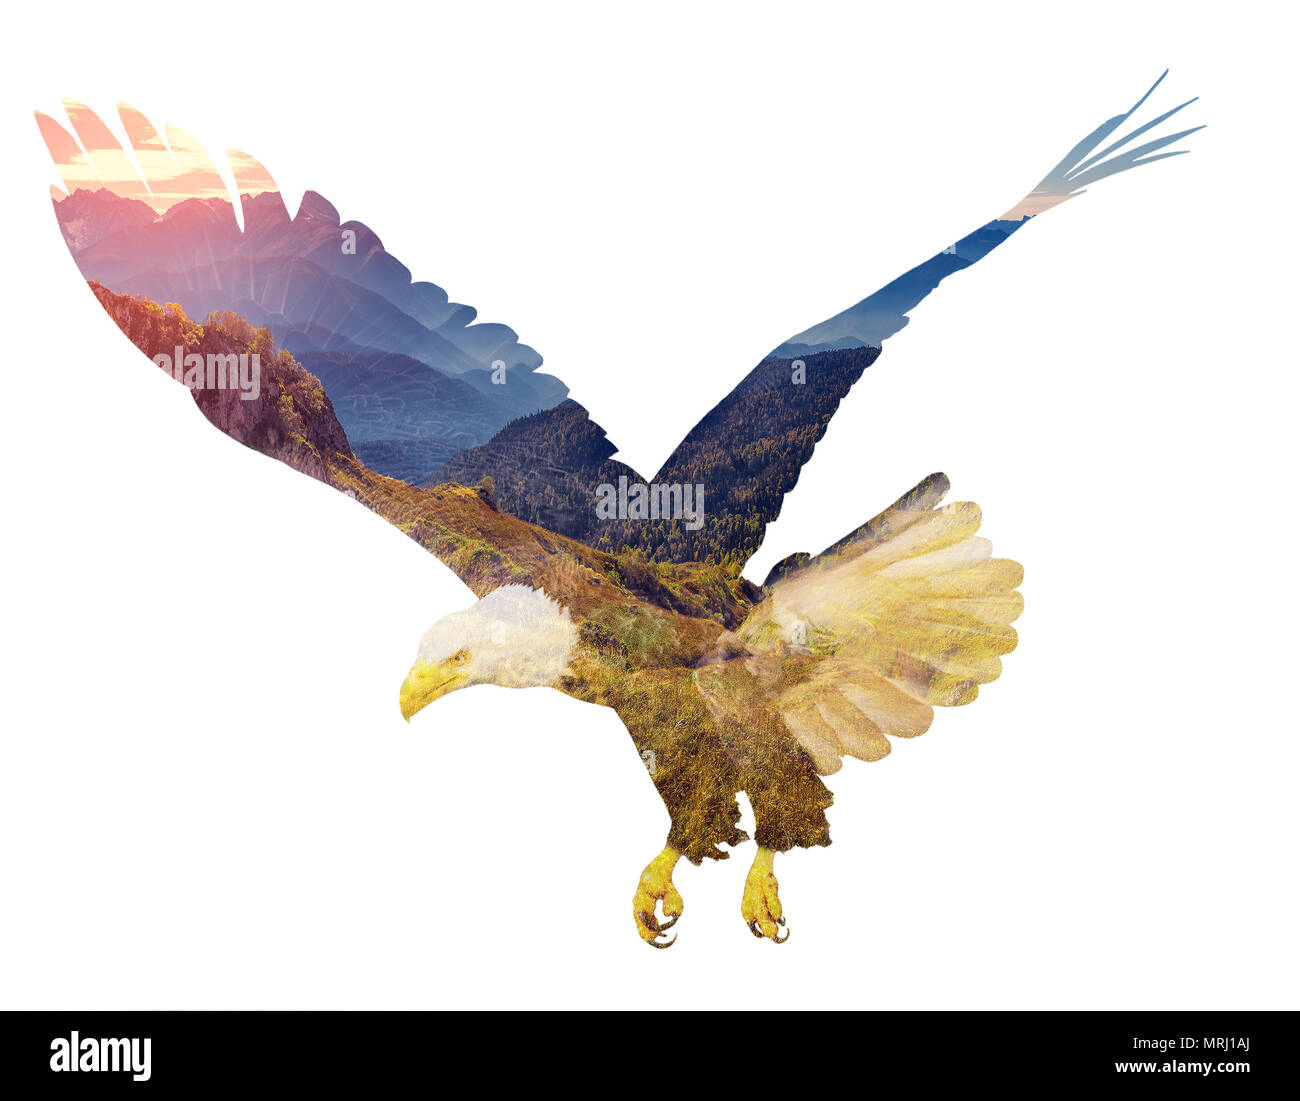 Adler auf weißem backgroun. Doppelt belichtete Abbildung. Stockfoto